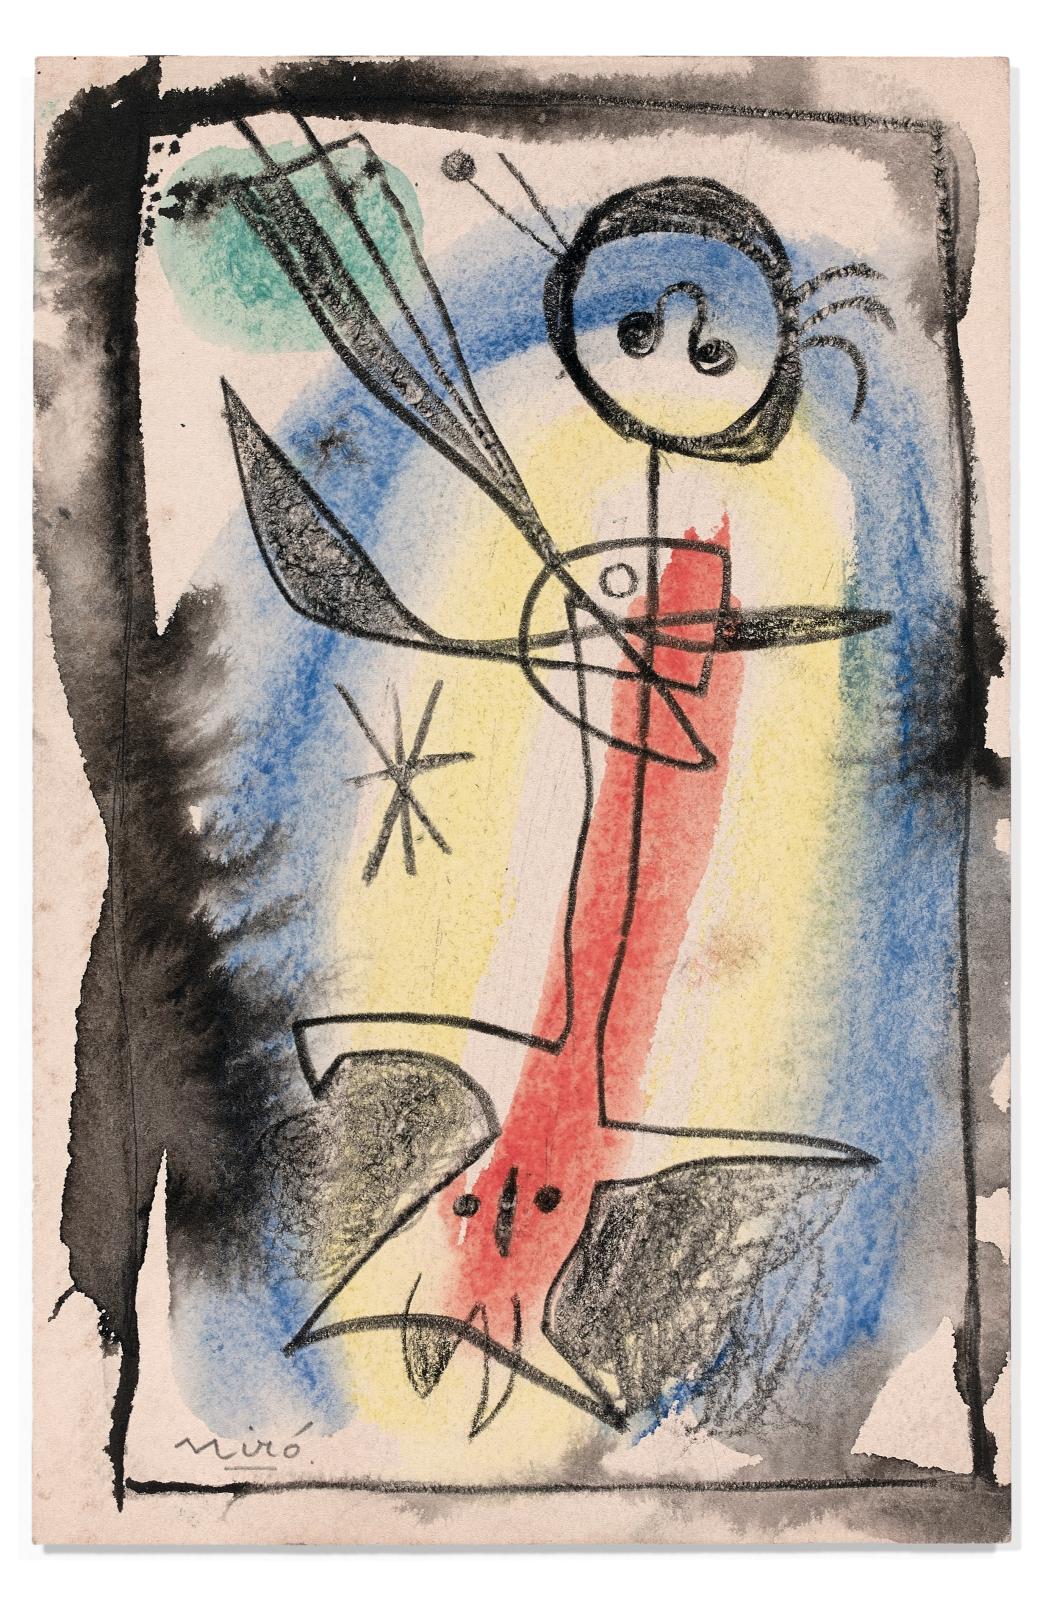 Joan Miró (1893-1983), Composition, 1956, aquarelle, encre de Chine, crayon de cire et mine de plomb sur papier, dédicace «A Benjamin Péret, très amic